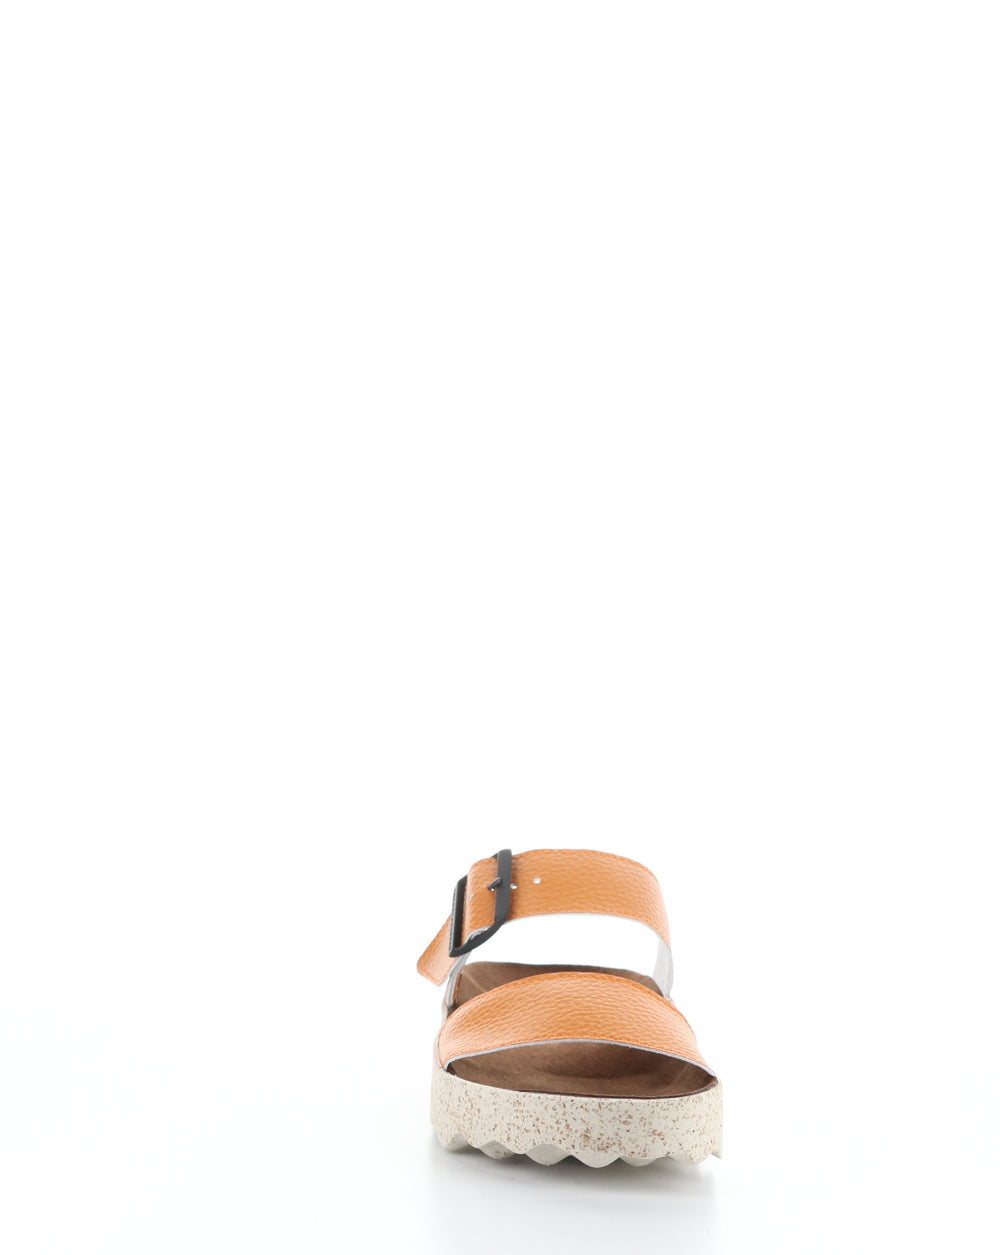 COLY225ASP 007 ORANGE Slip-on Sandals